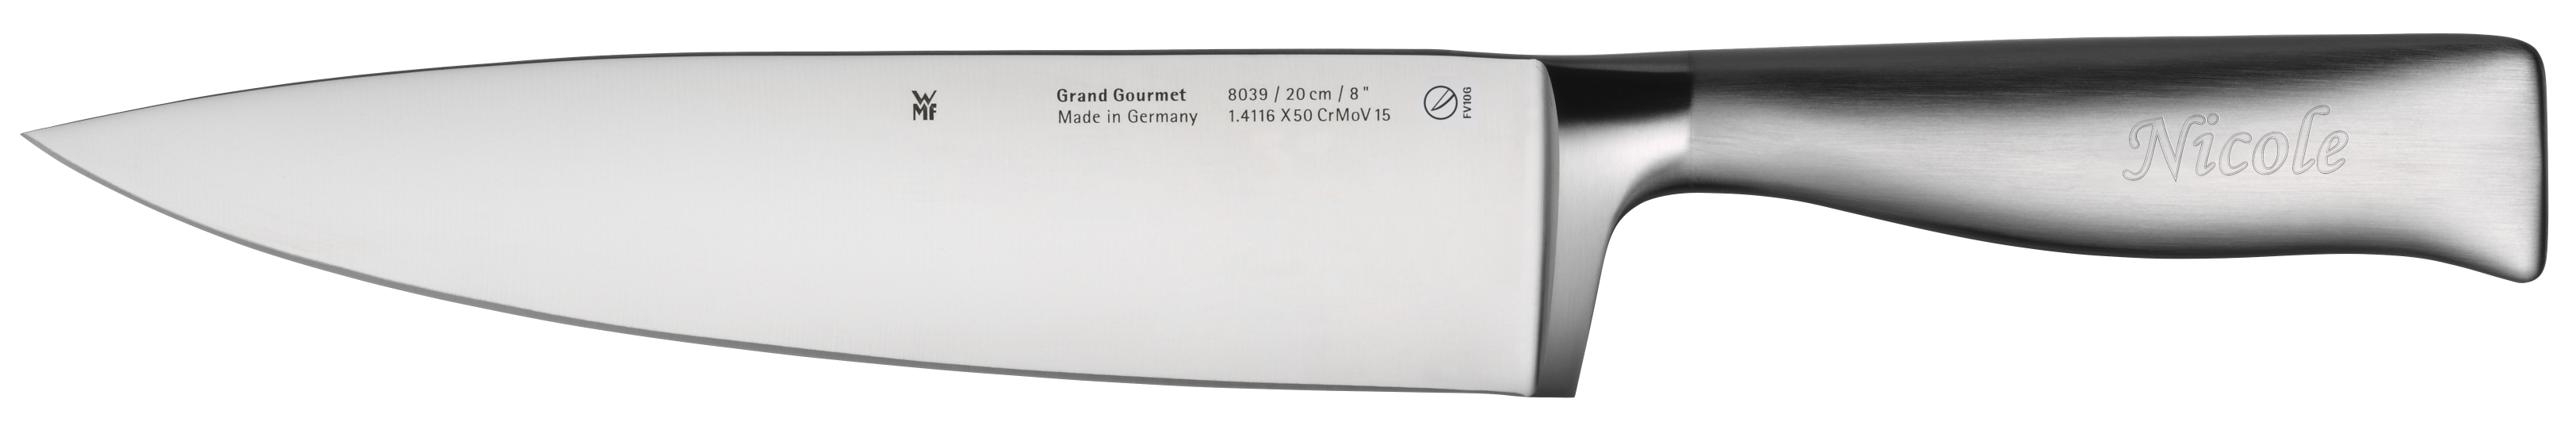 Grand Gourmet Kochmesser, 20 cm Geschmiedete Klinge,Performance Cut Technologie 